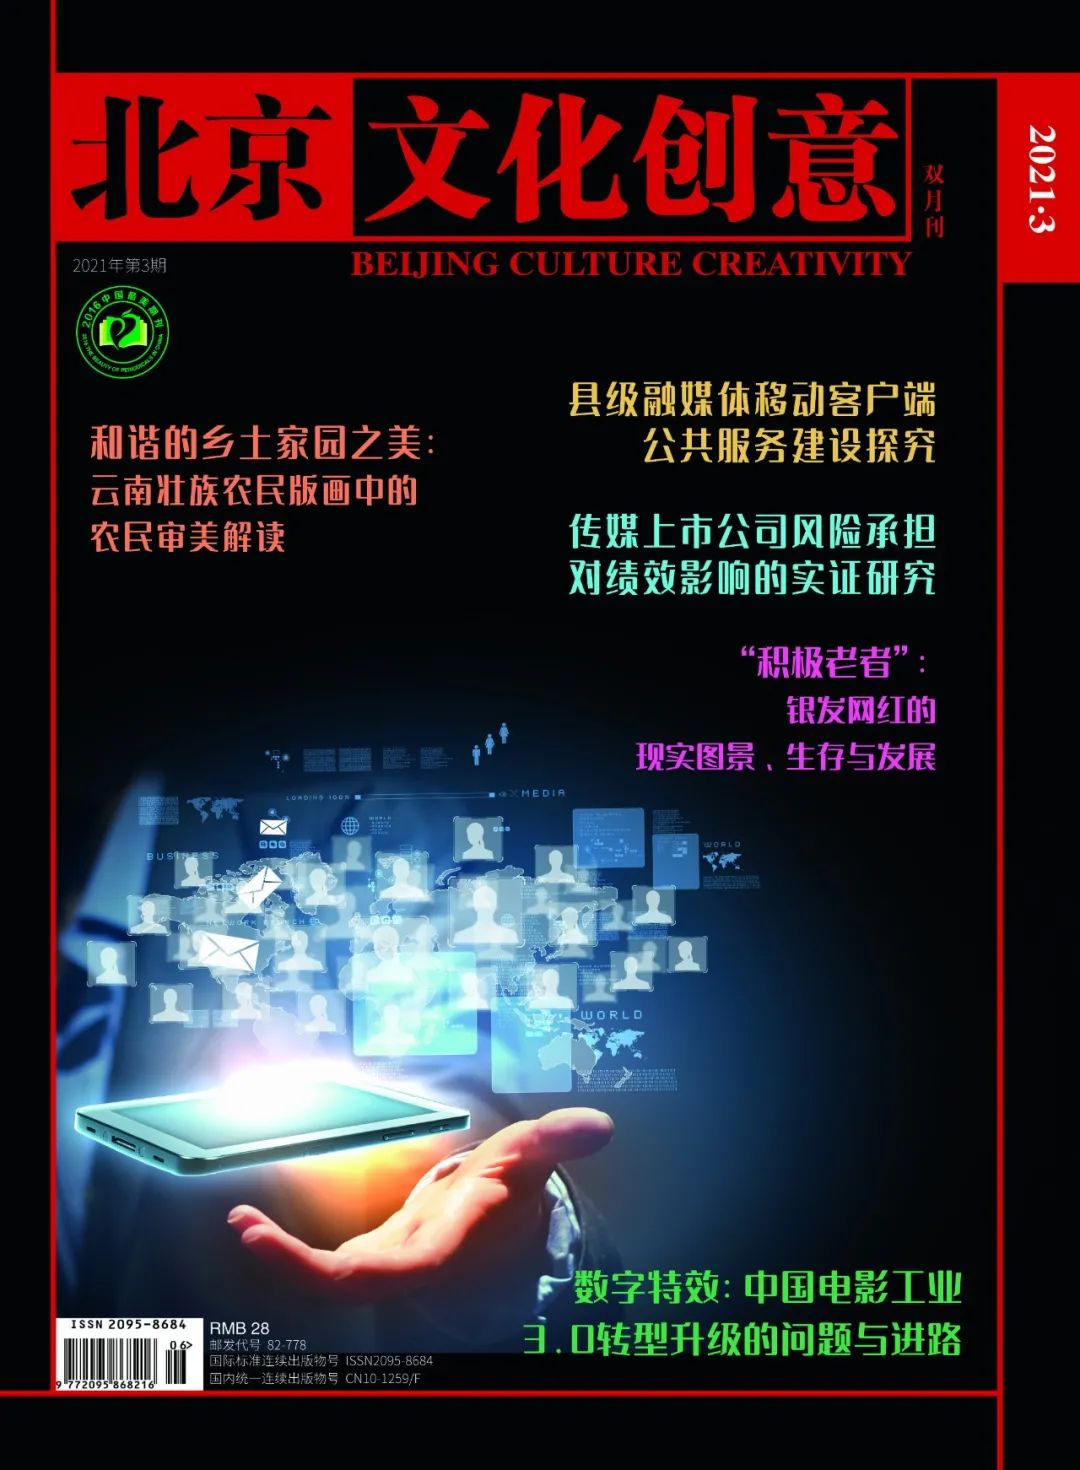 新刊目录丨 北京文化创意 21年第3期 北京文化创意期刊官方网站